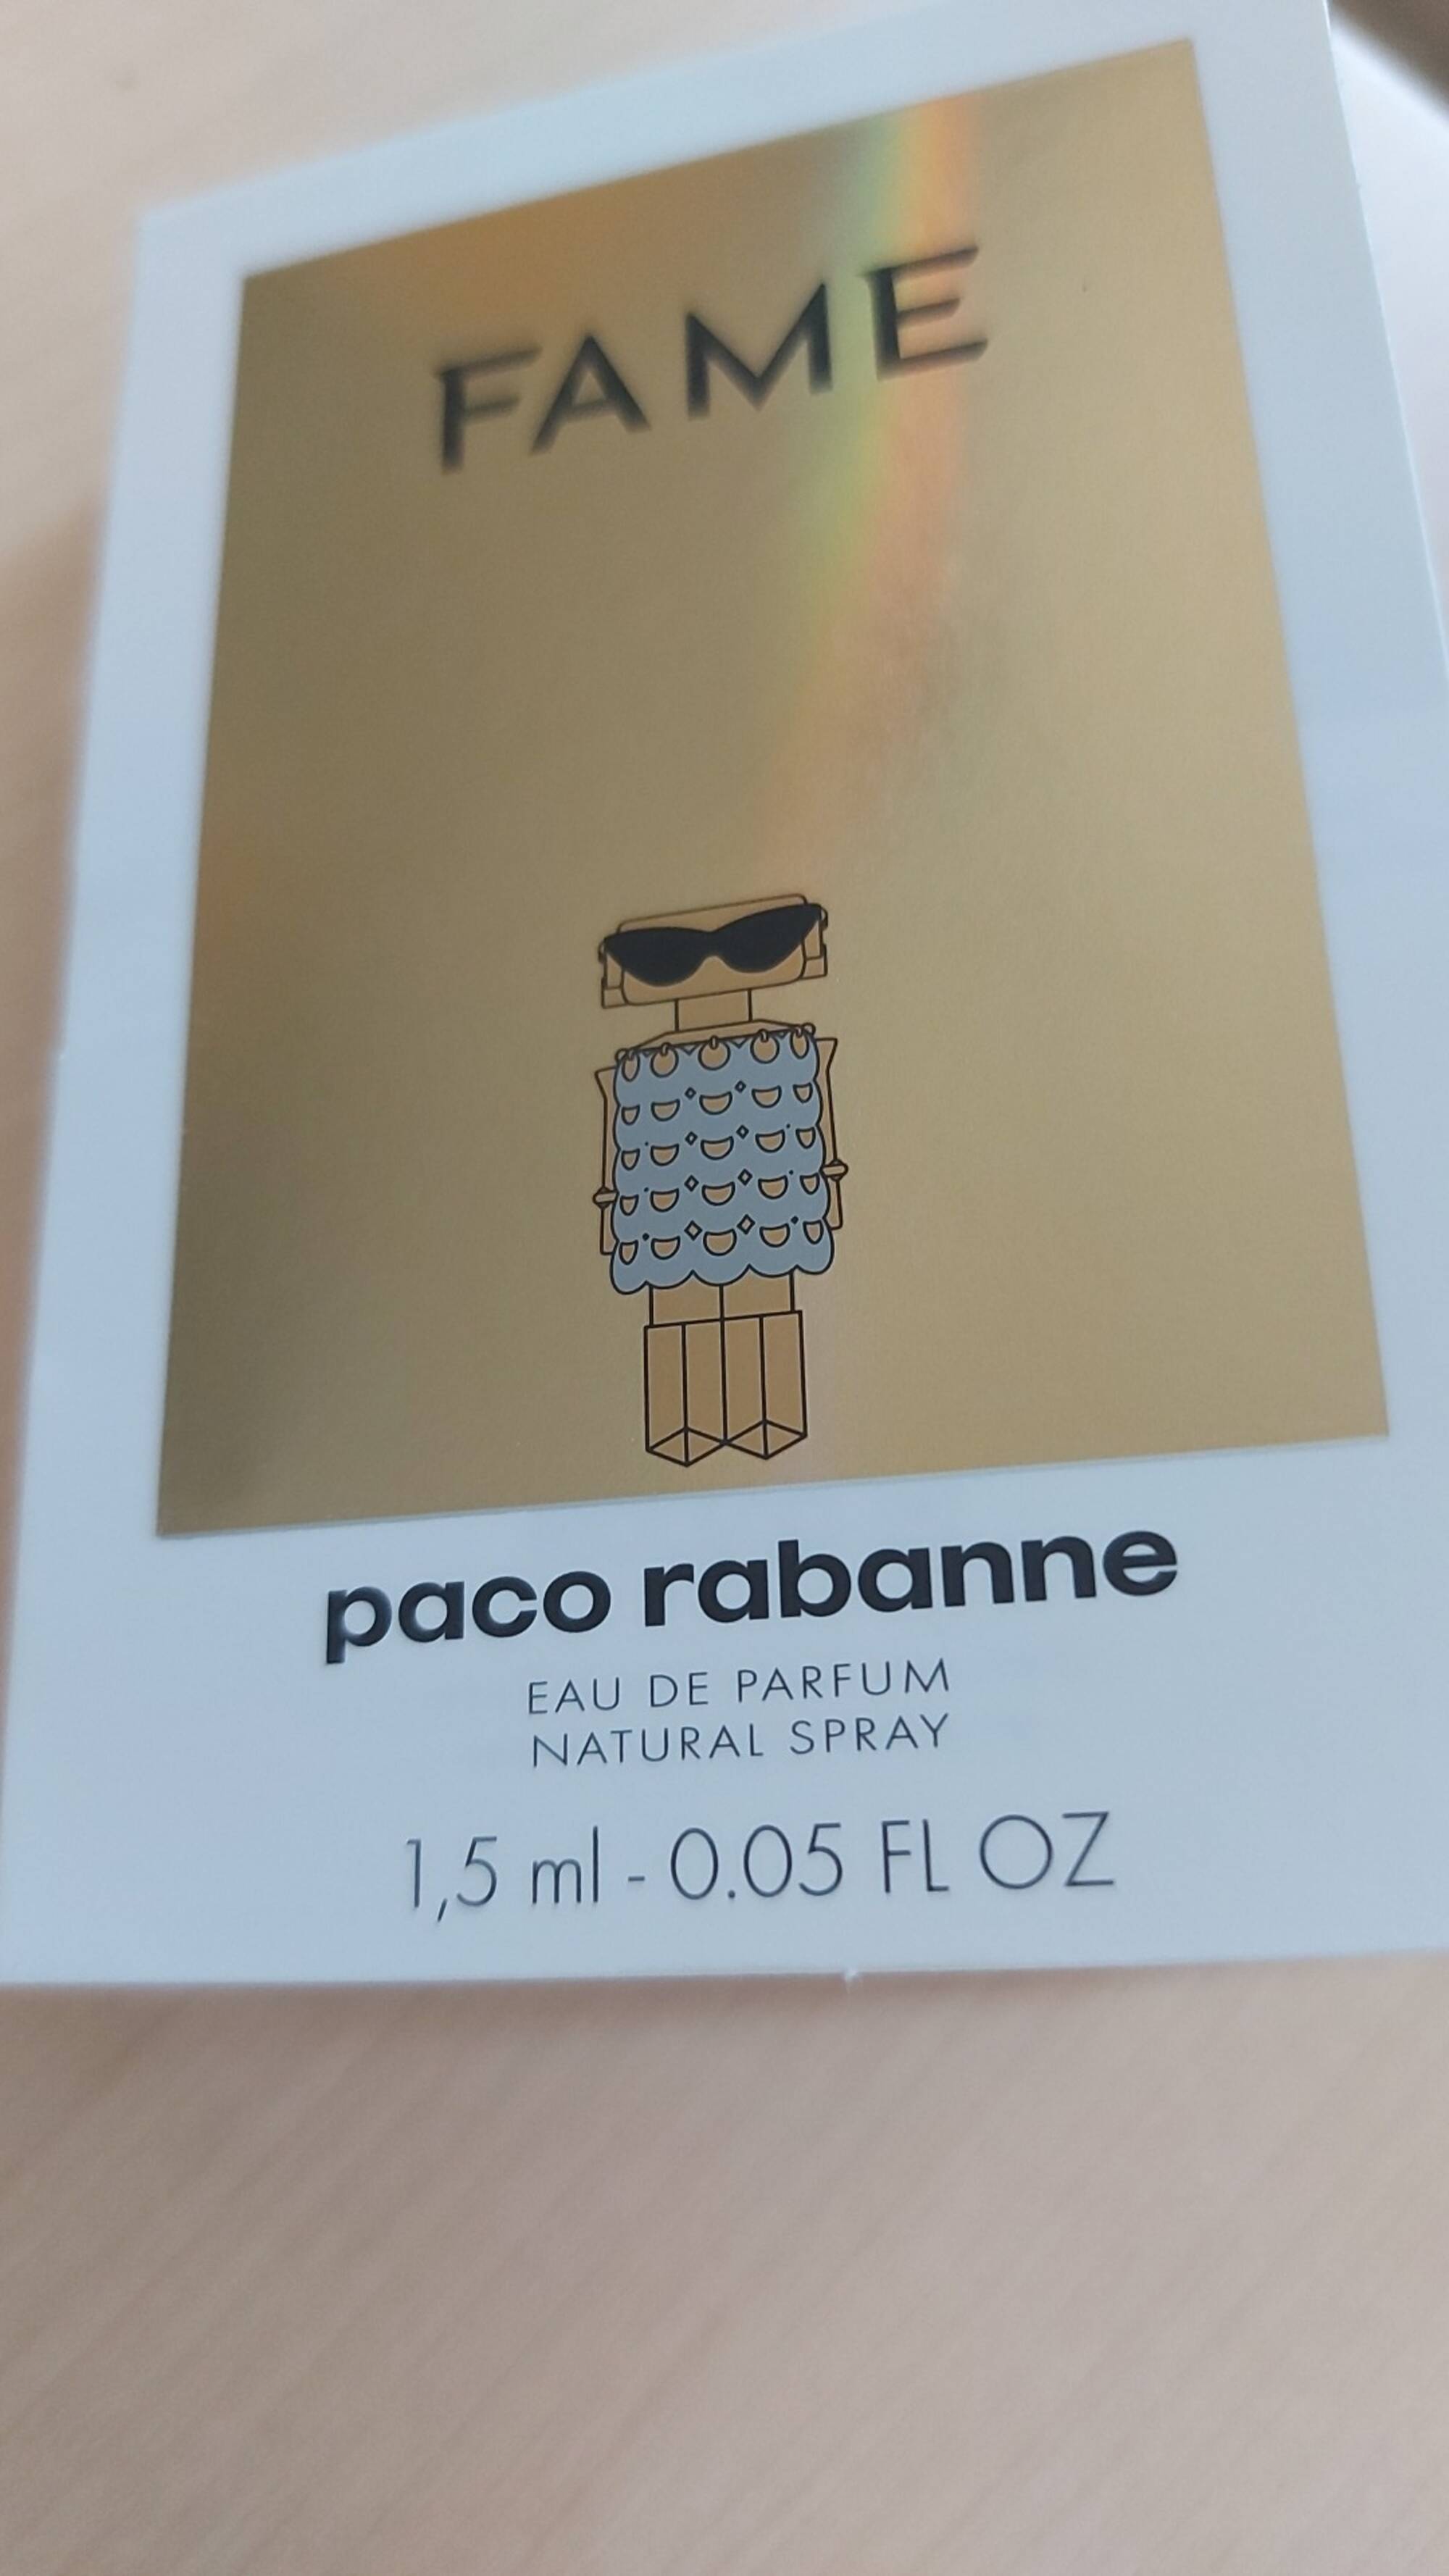 PACO RABANNE - Fame - Eau de parfum